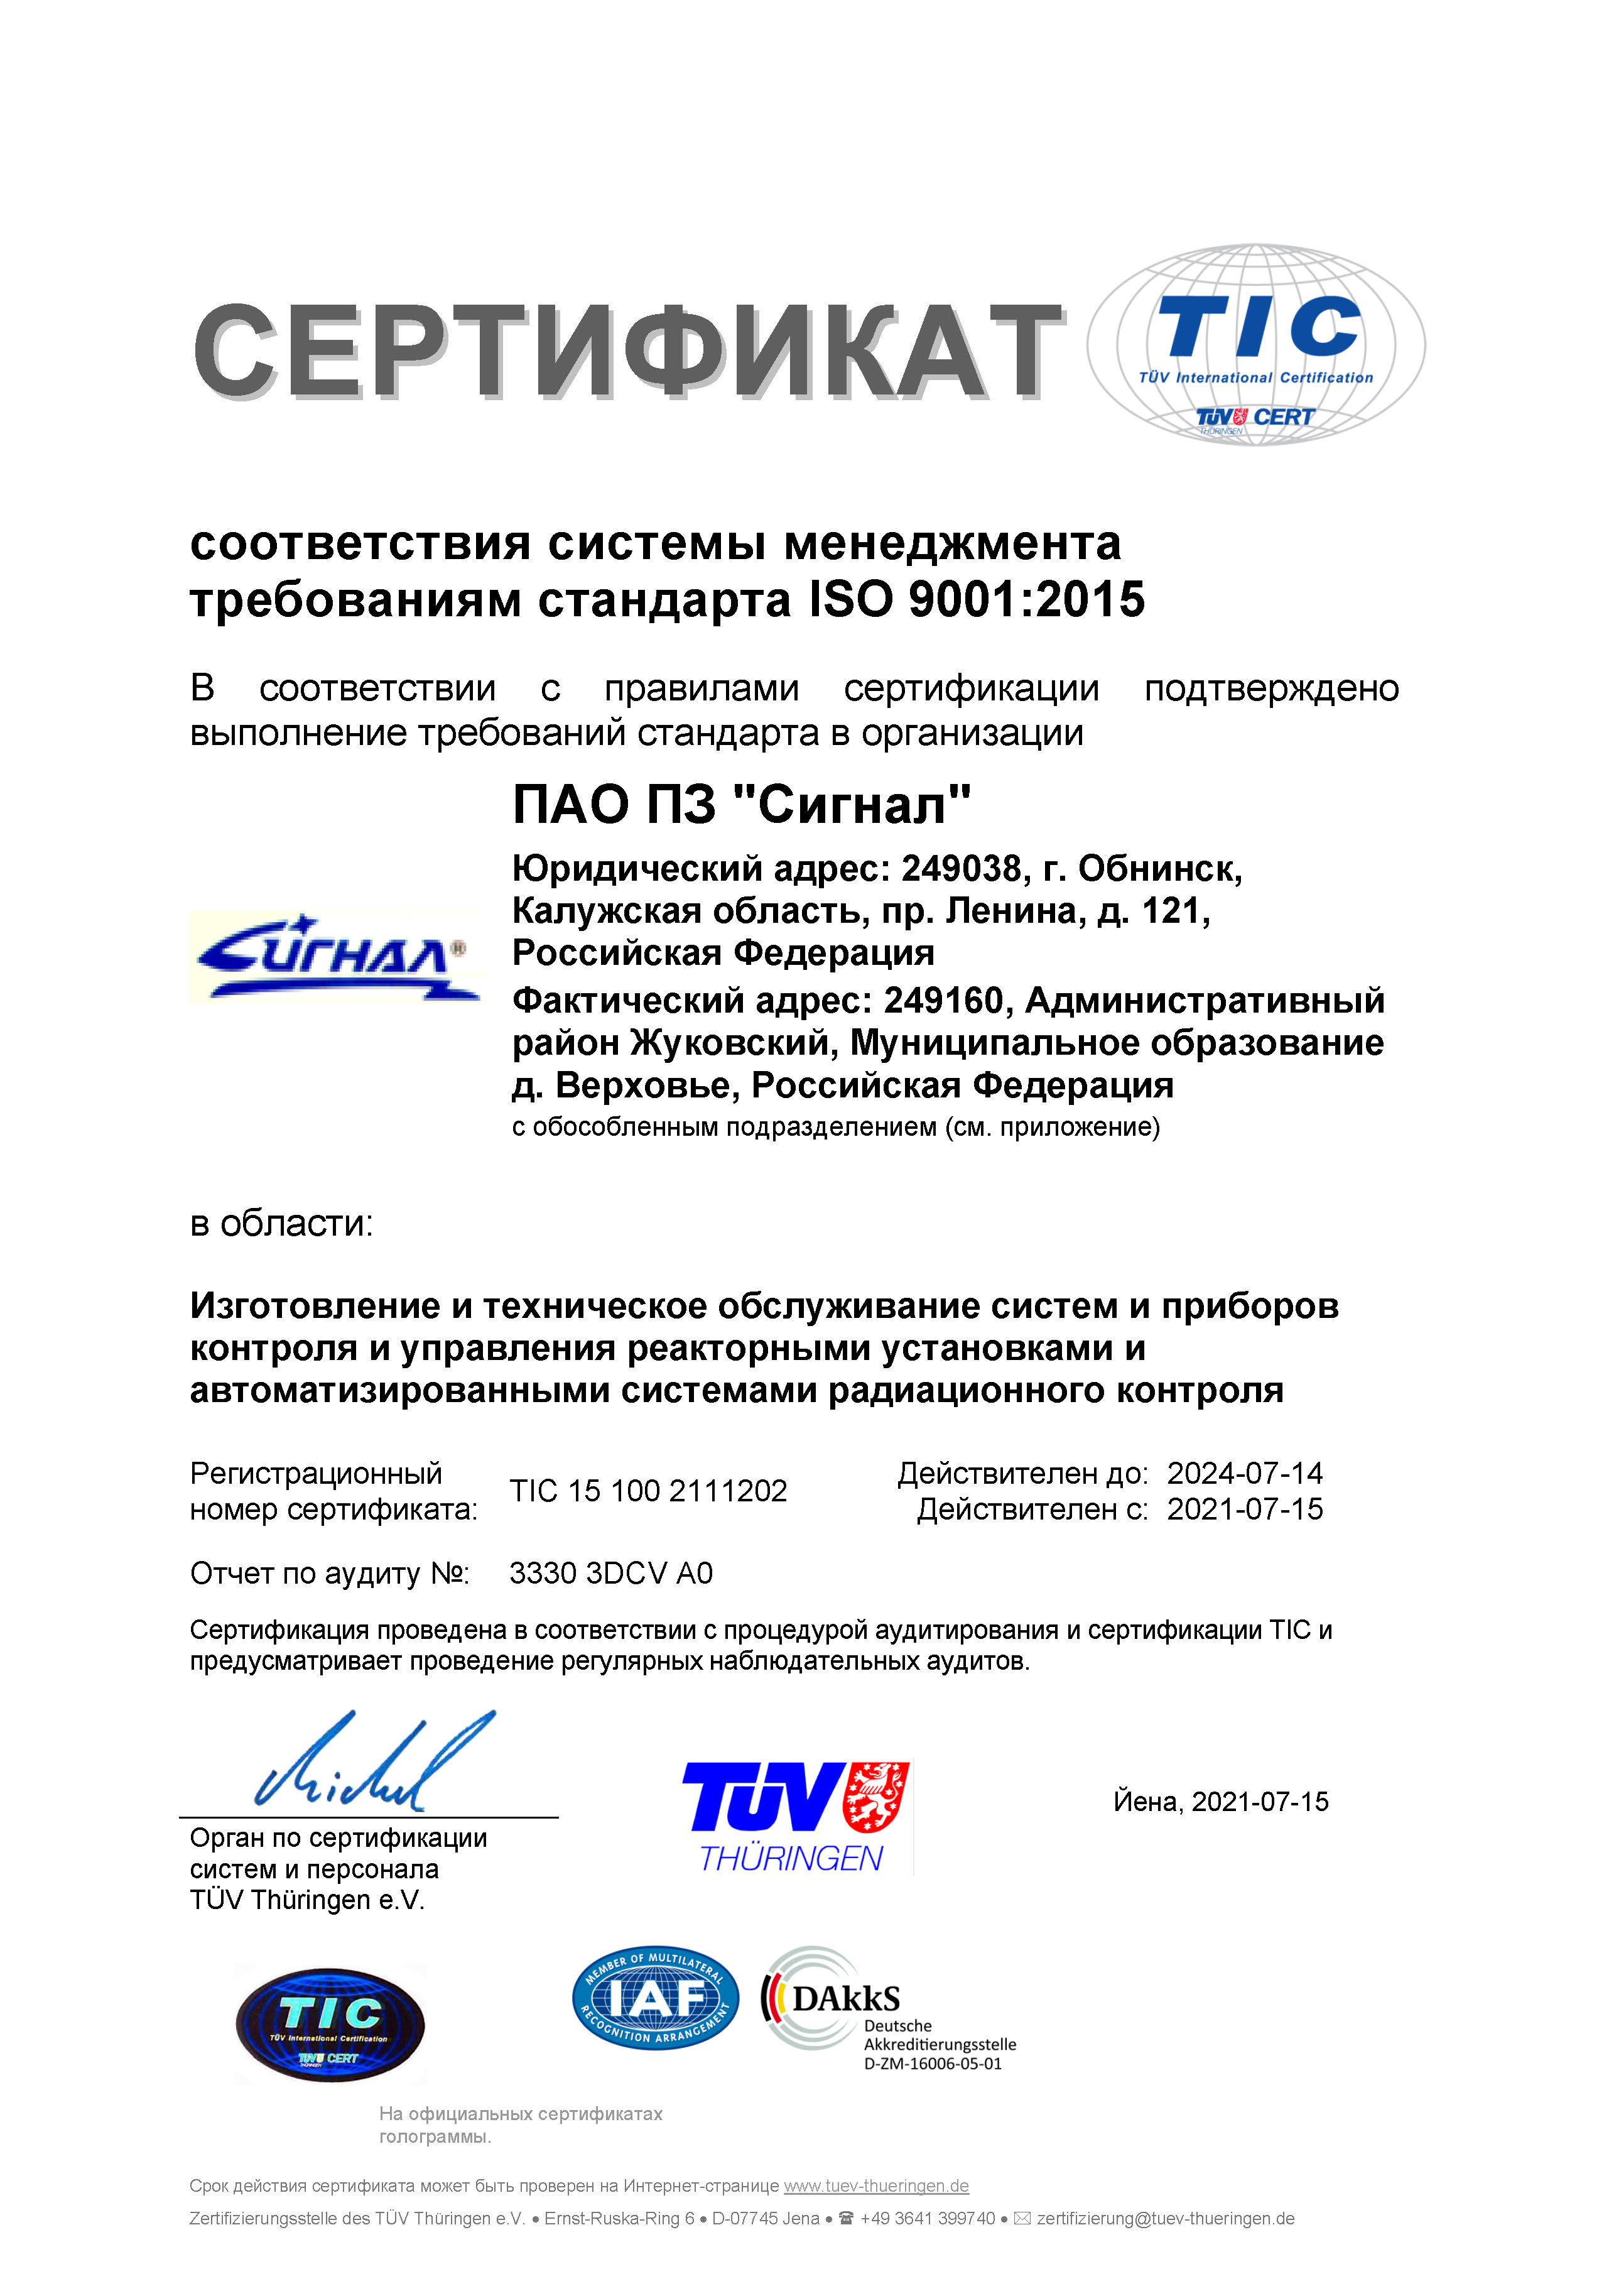 Сертификат соответствия системы менеджмента требованиям стандарта ISO 9001:2015